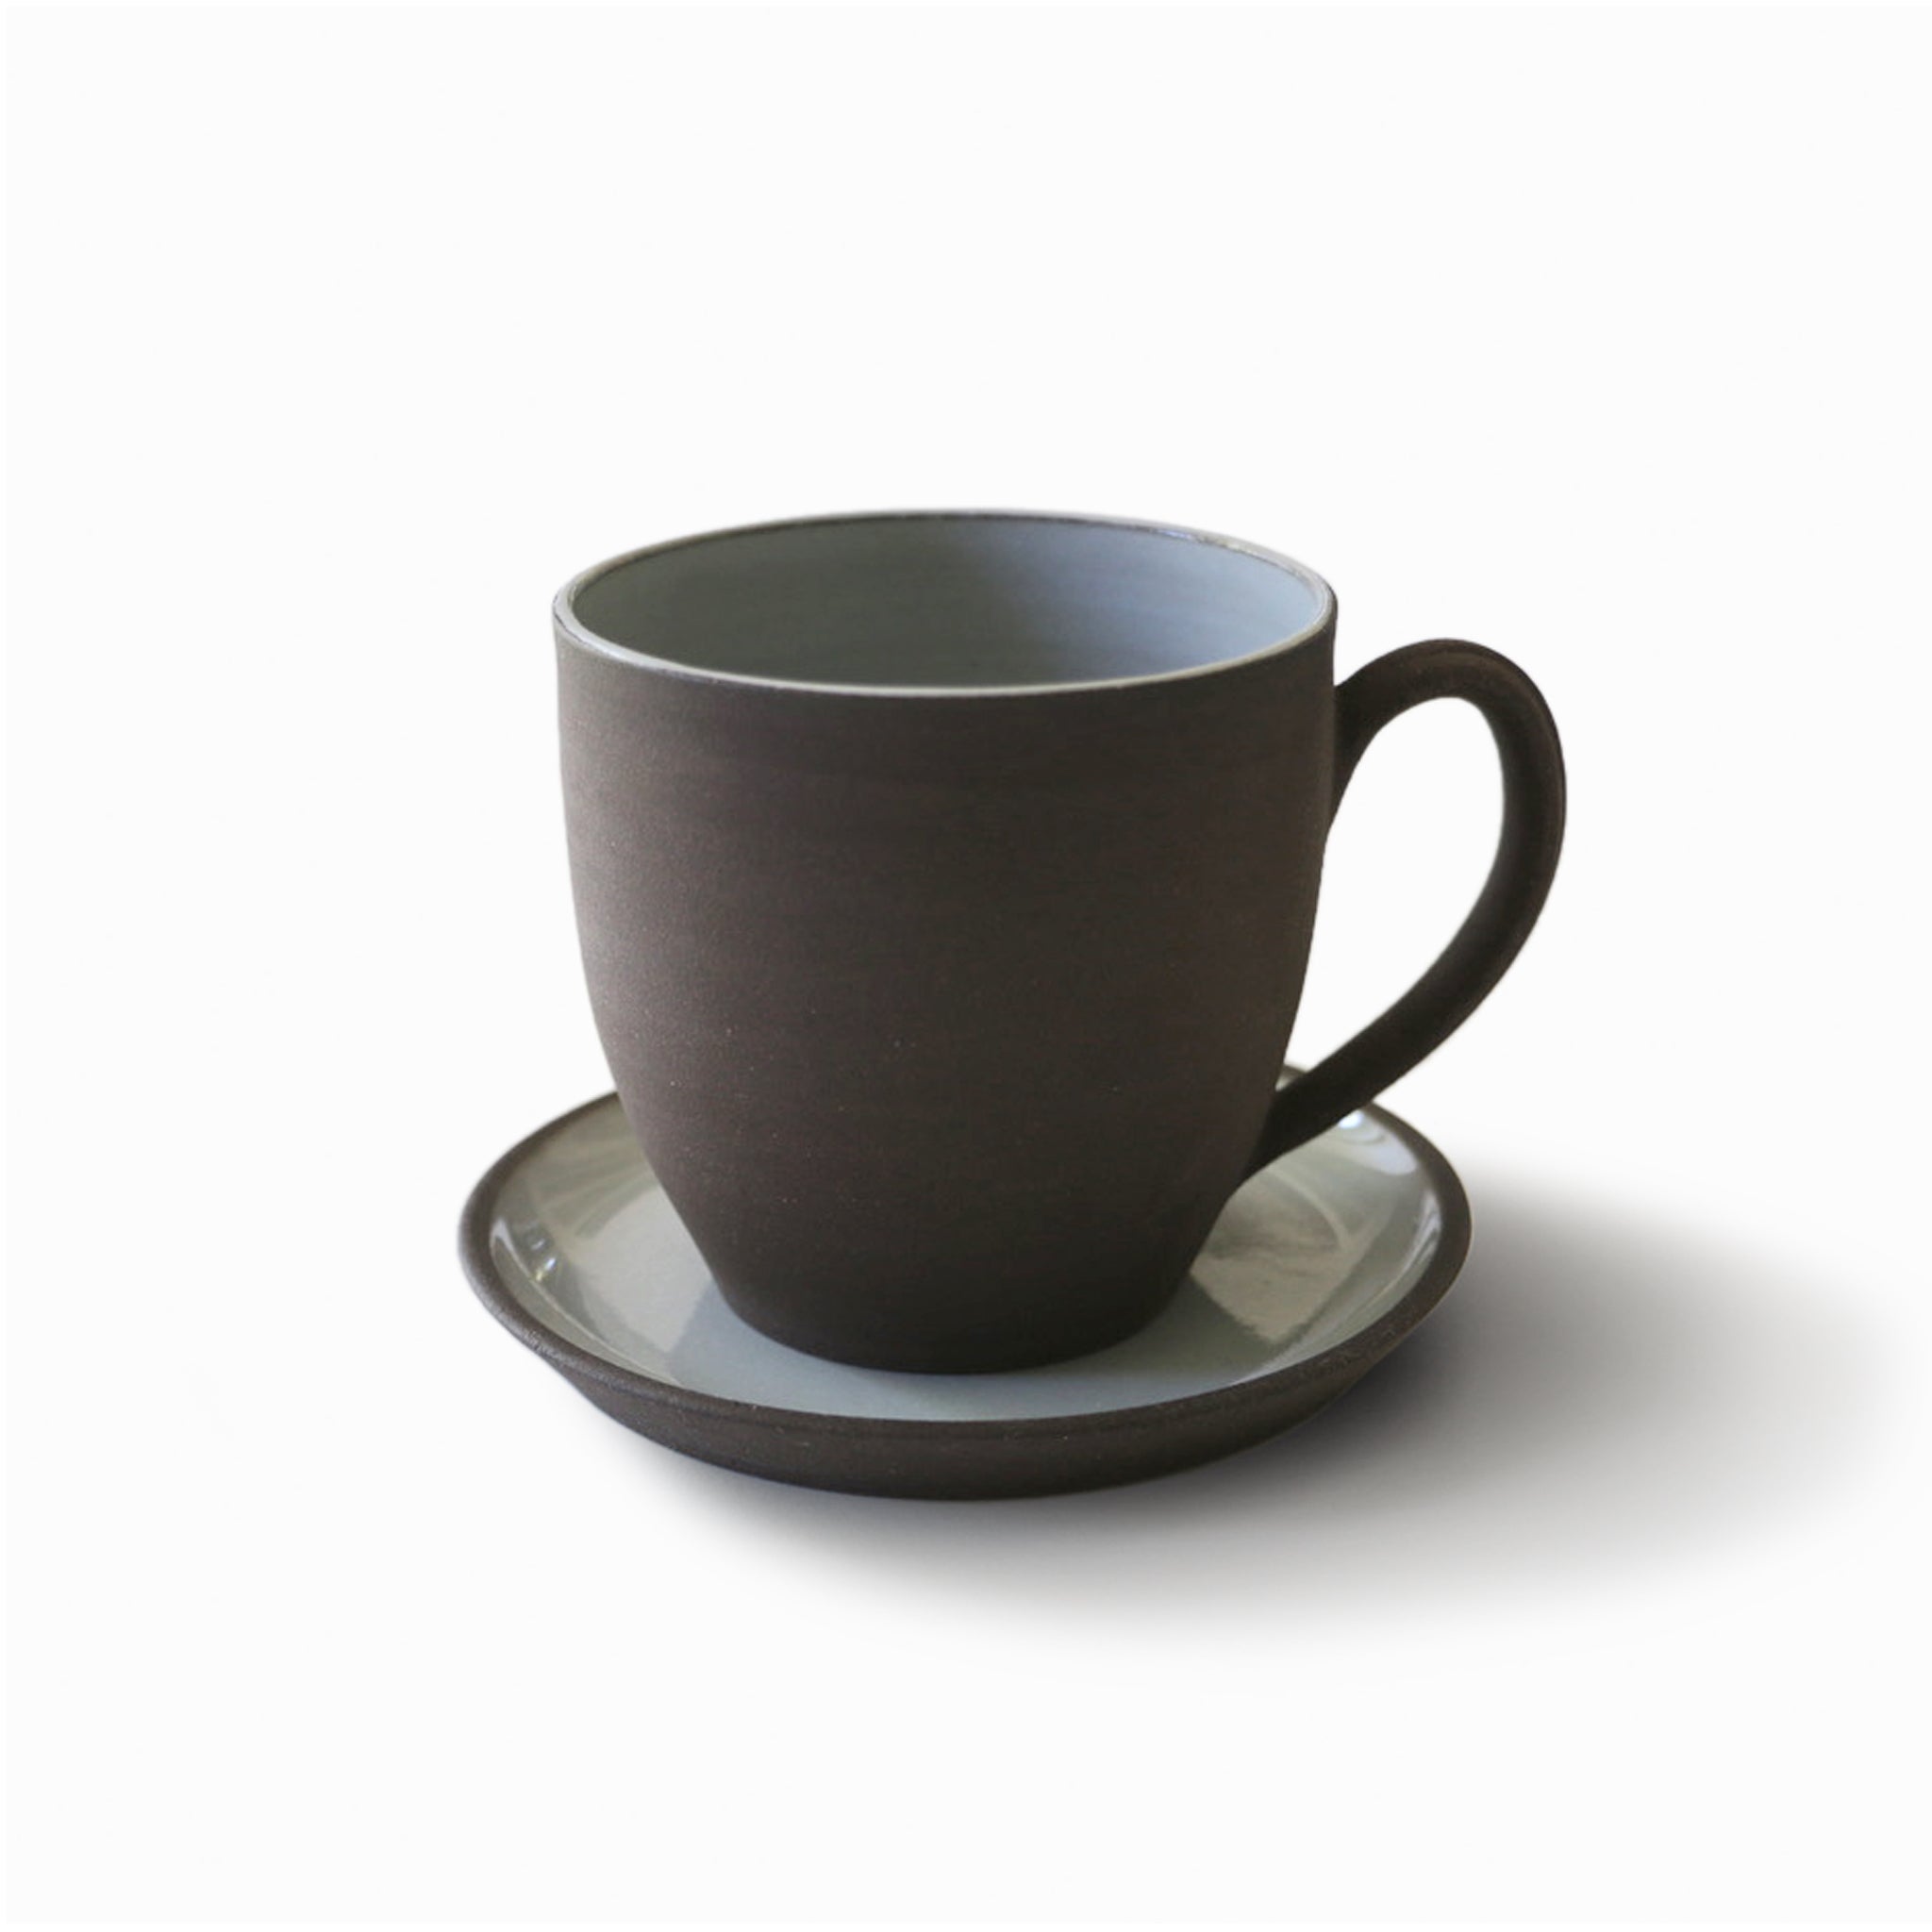 tasse à café/thé en grès brun chocolat avec soucoupe